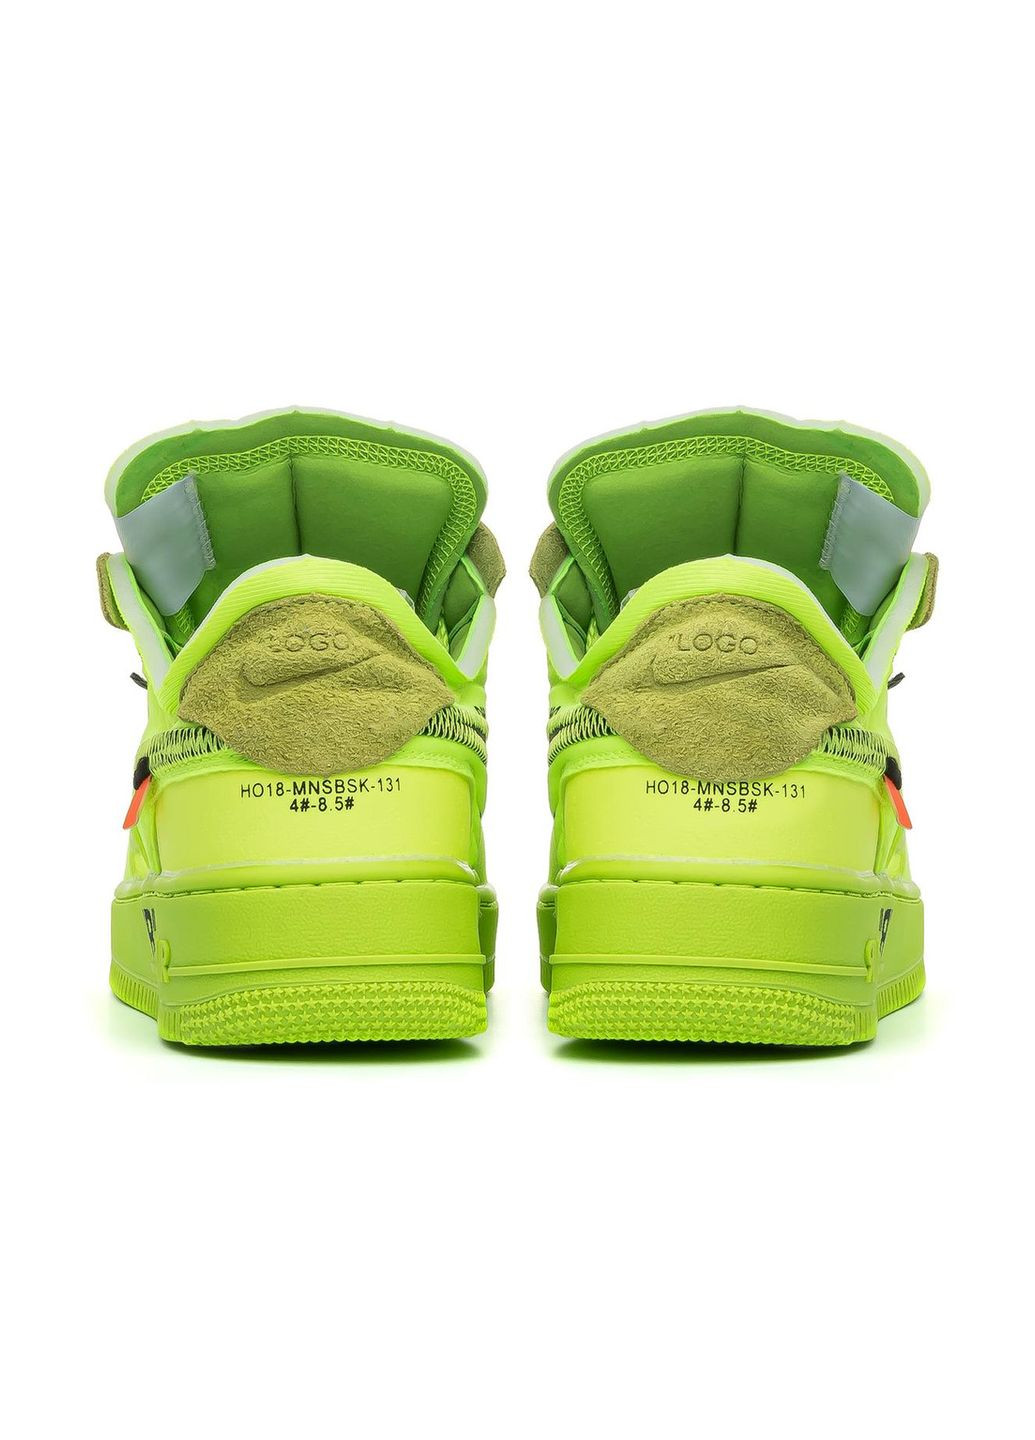 Салатовые демисезонные кроссовки мужские x off white 1 low green, вьетнам Nike Air Force